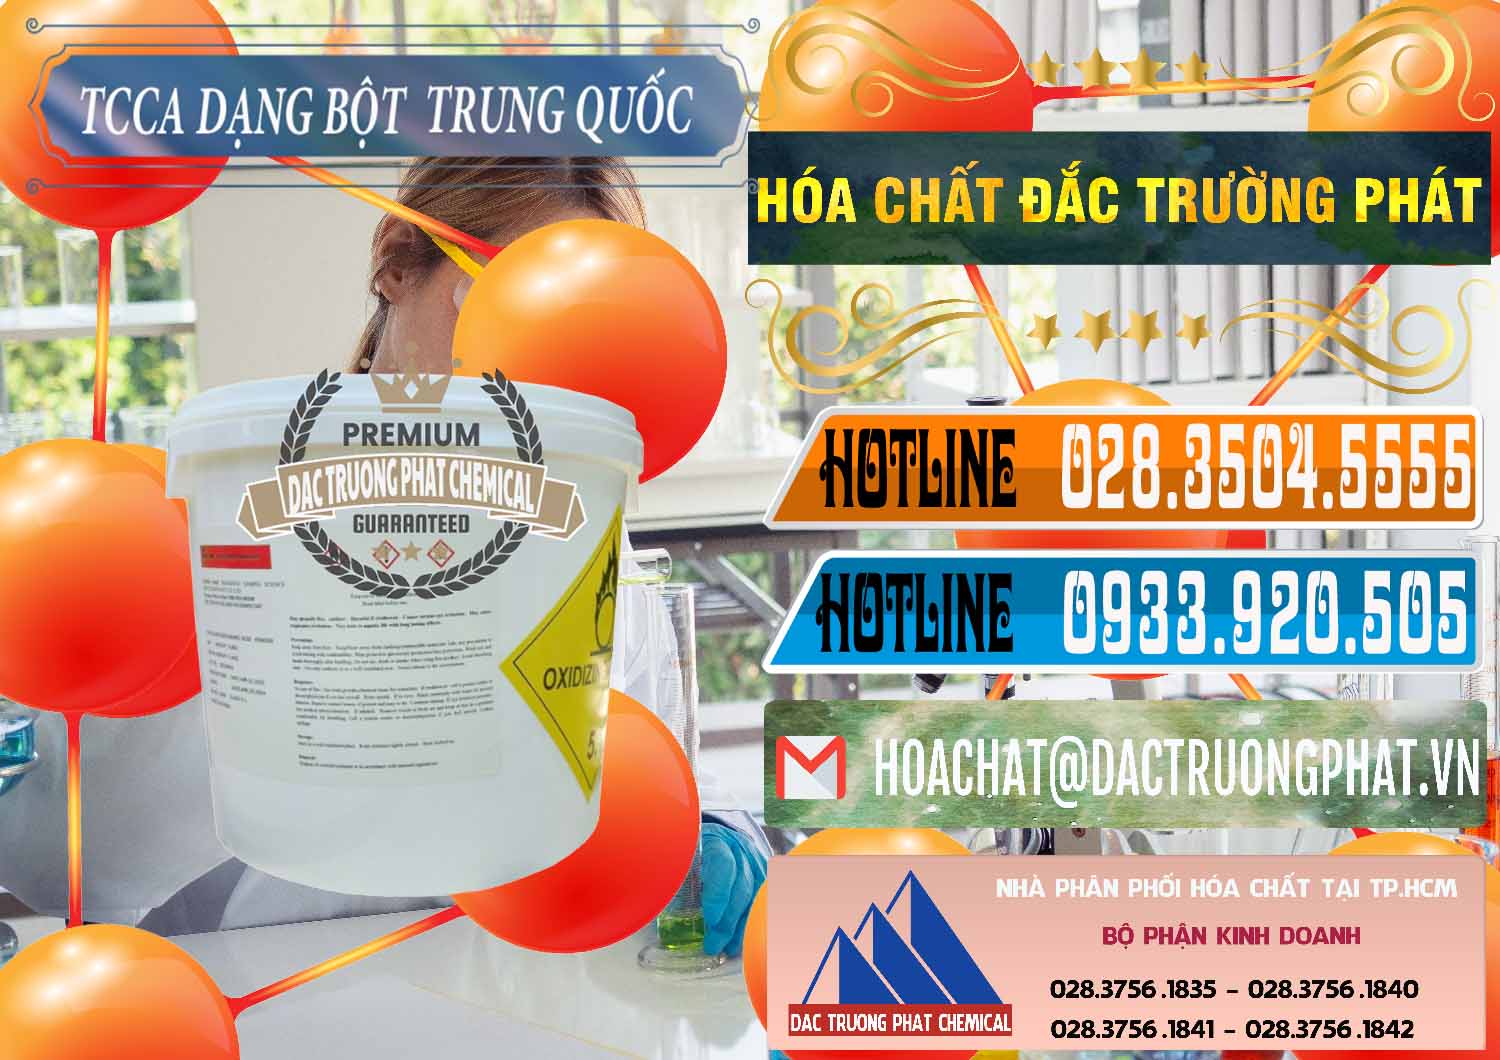 Nơi cung ứng - bán TCCA - Acid Trichloroisocyanuric Dạng Bột Thùng 5kg Trung Quốc China - 0378 - Công ty kinh doanh ( cung cấp ) hóa chất tại TP.HCM - stmp.net